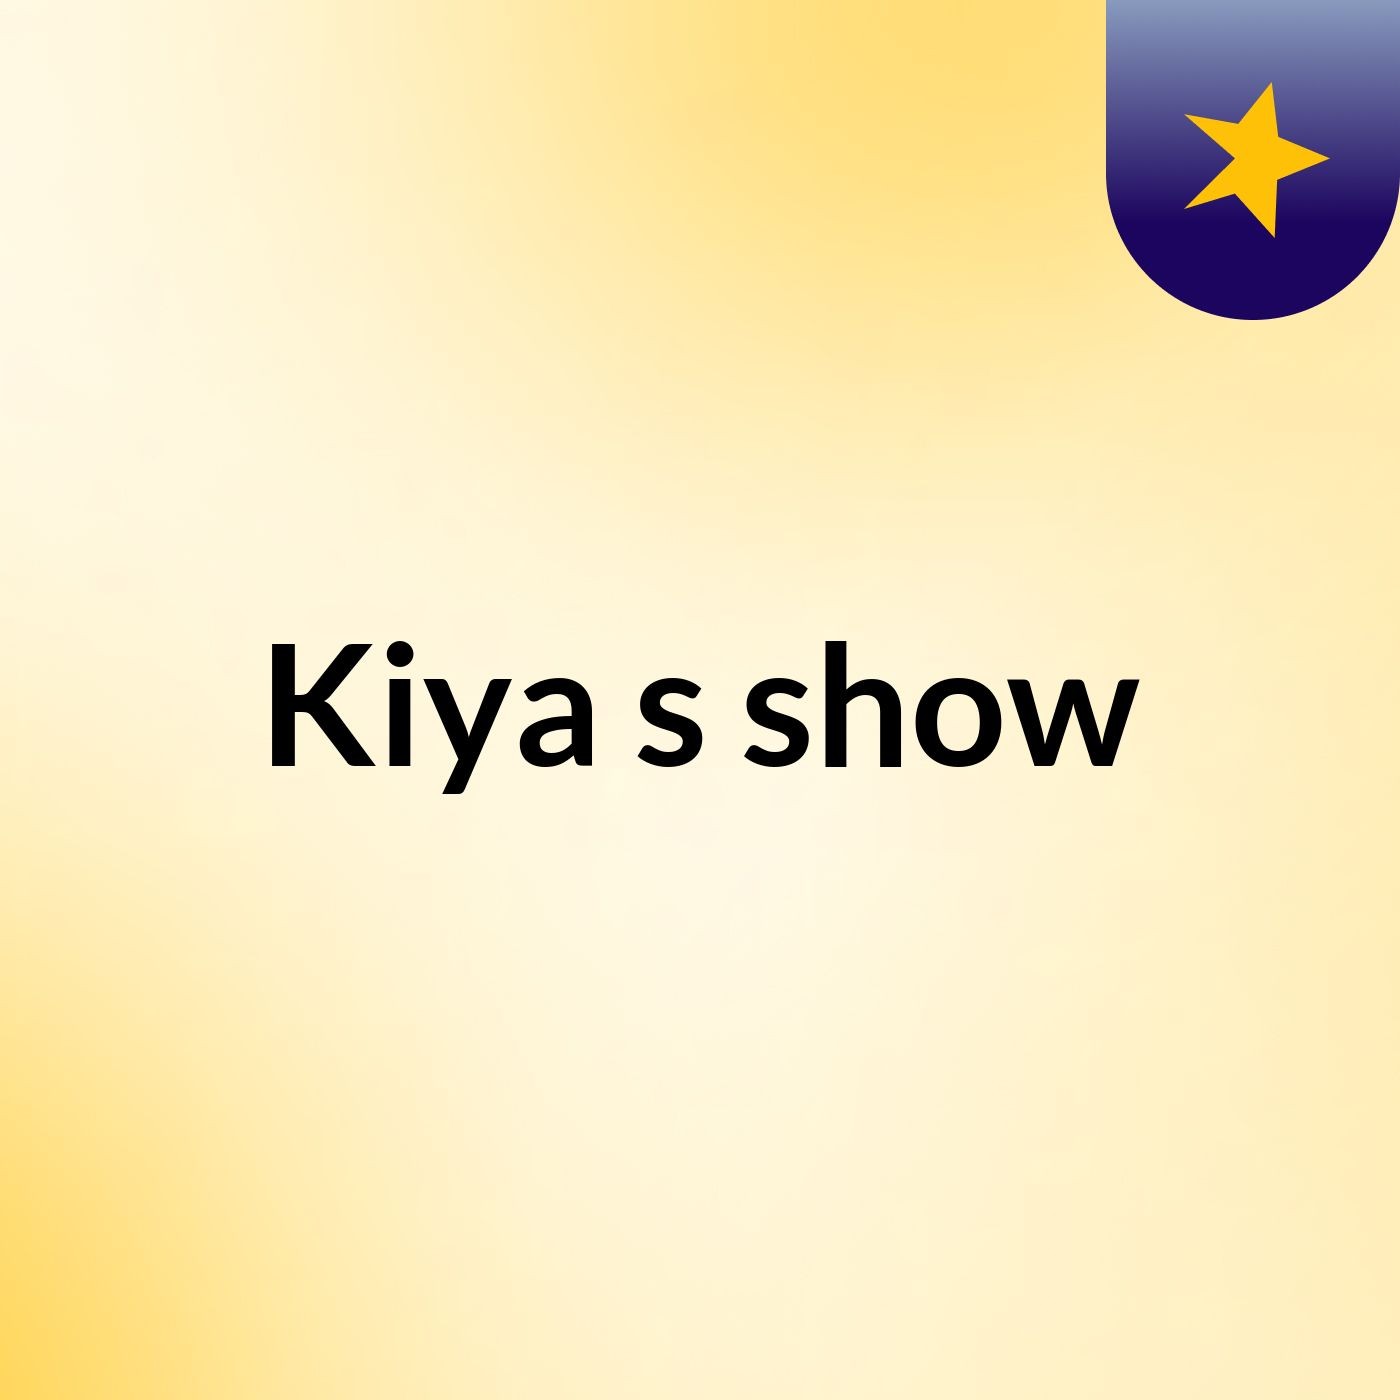 Kiya's show